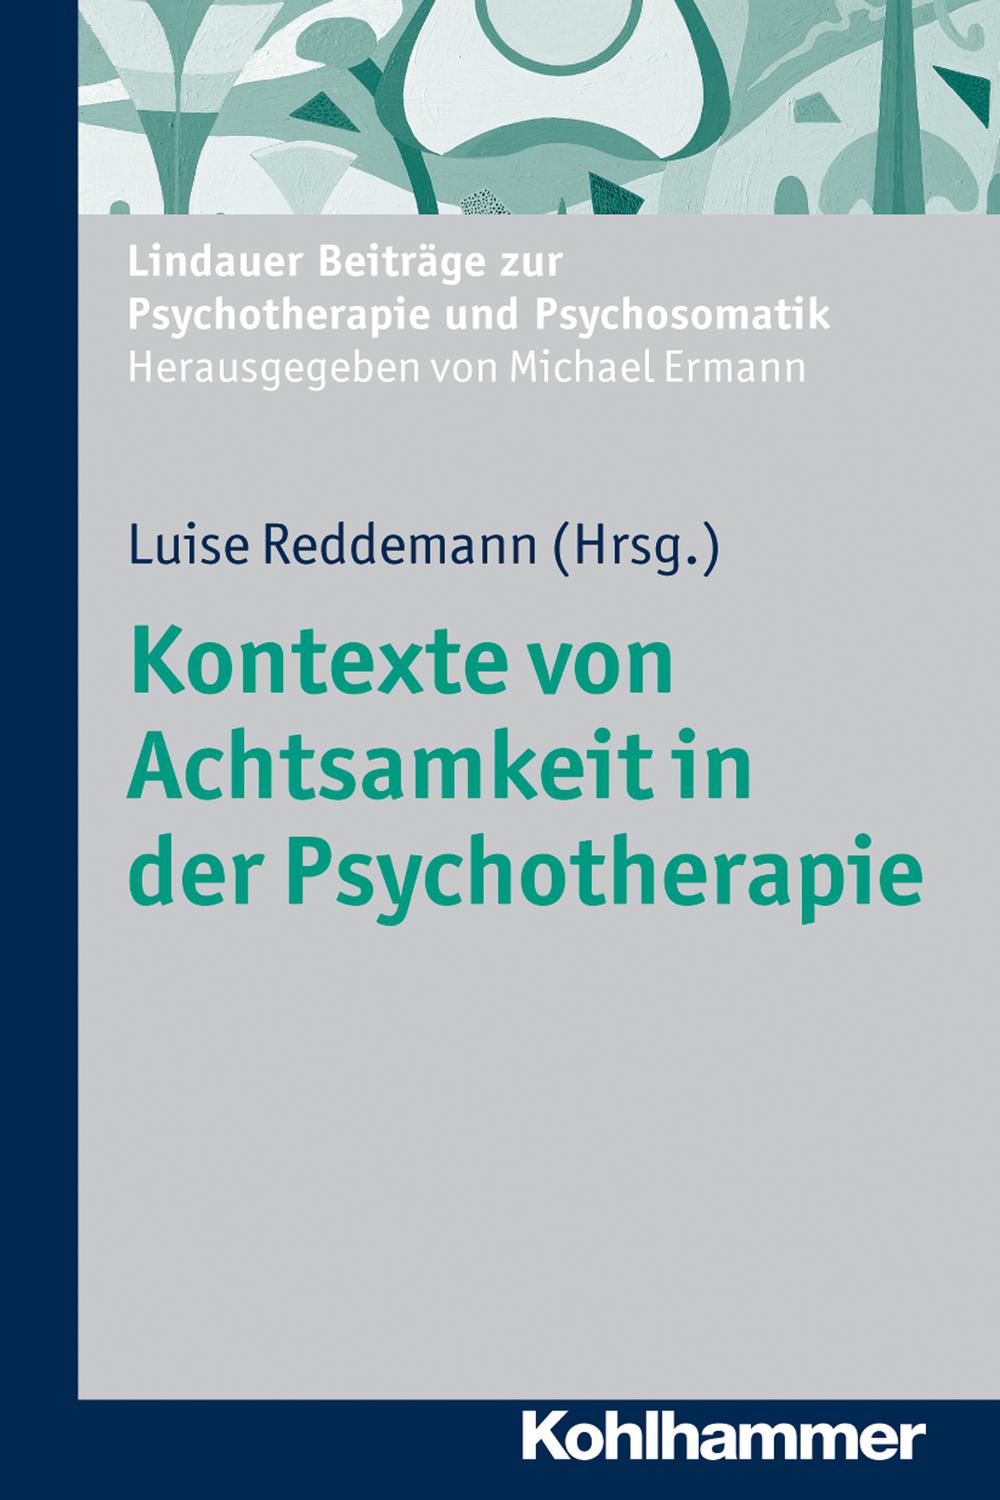 Kontexte von Achtsamkeit in der Psychotherapie - Luise Reddemann